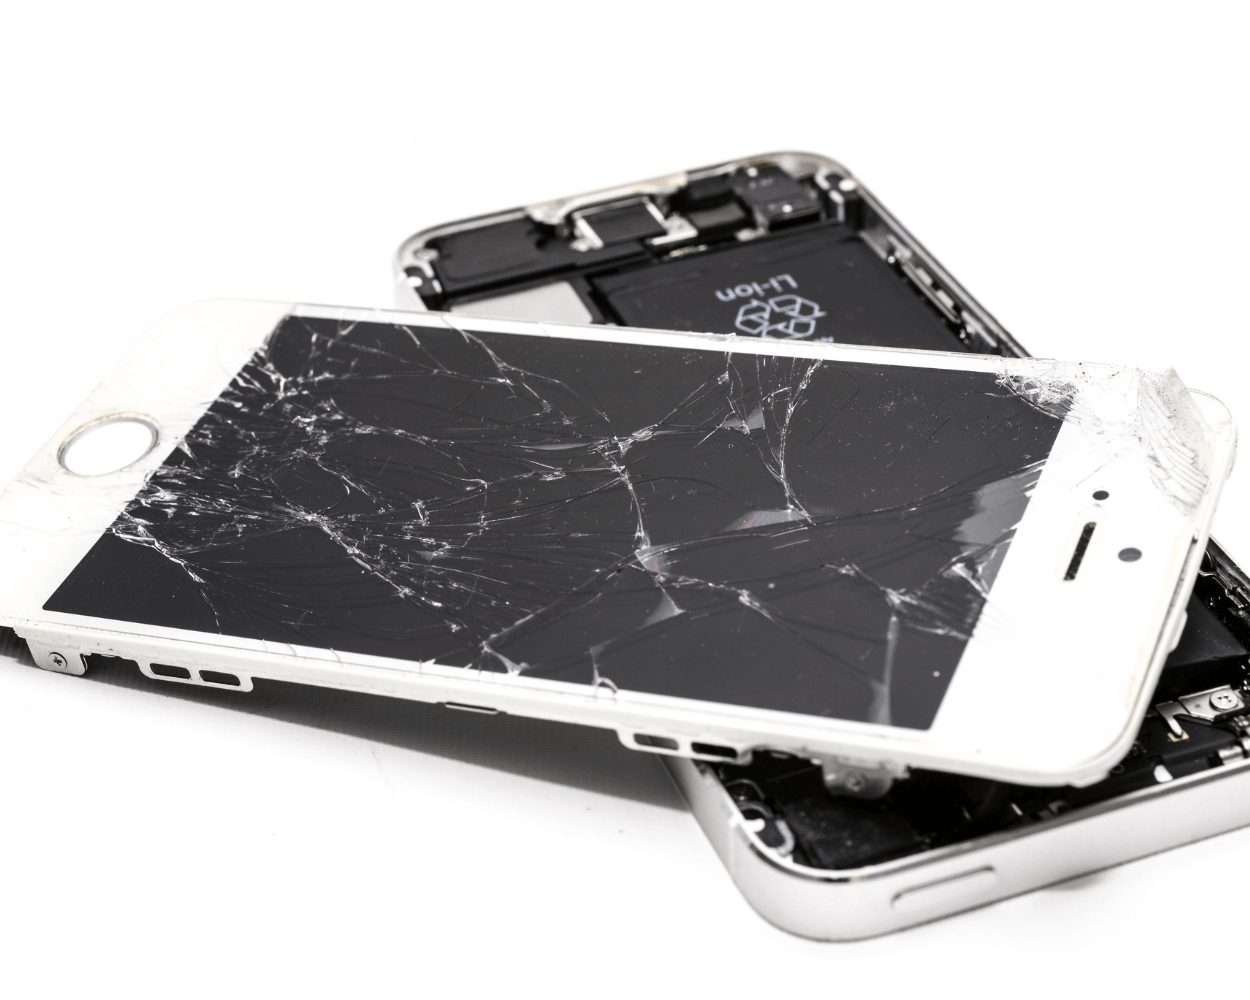 Professional iPhone Repair in Bangalore